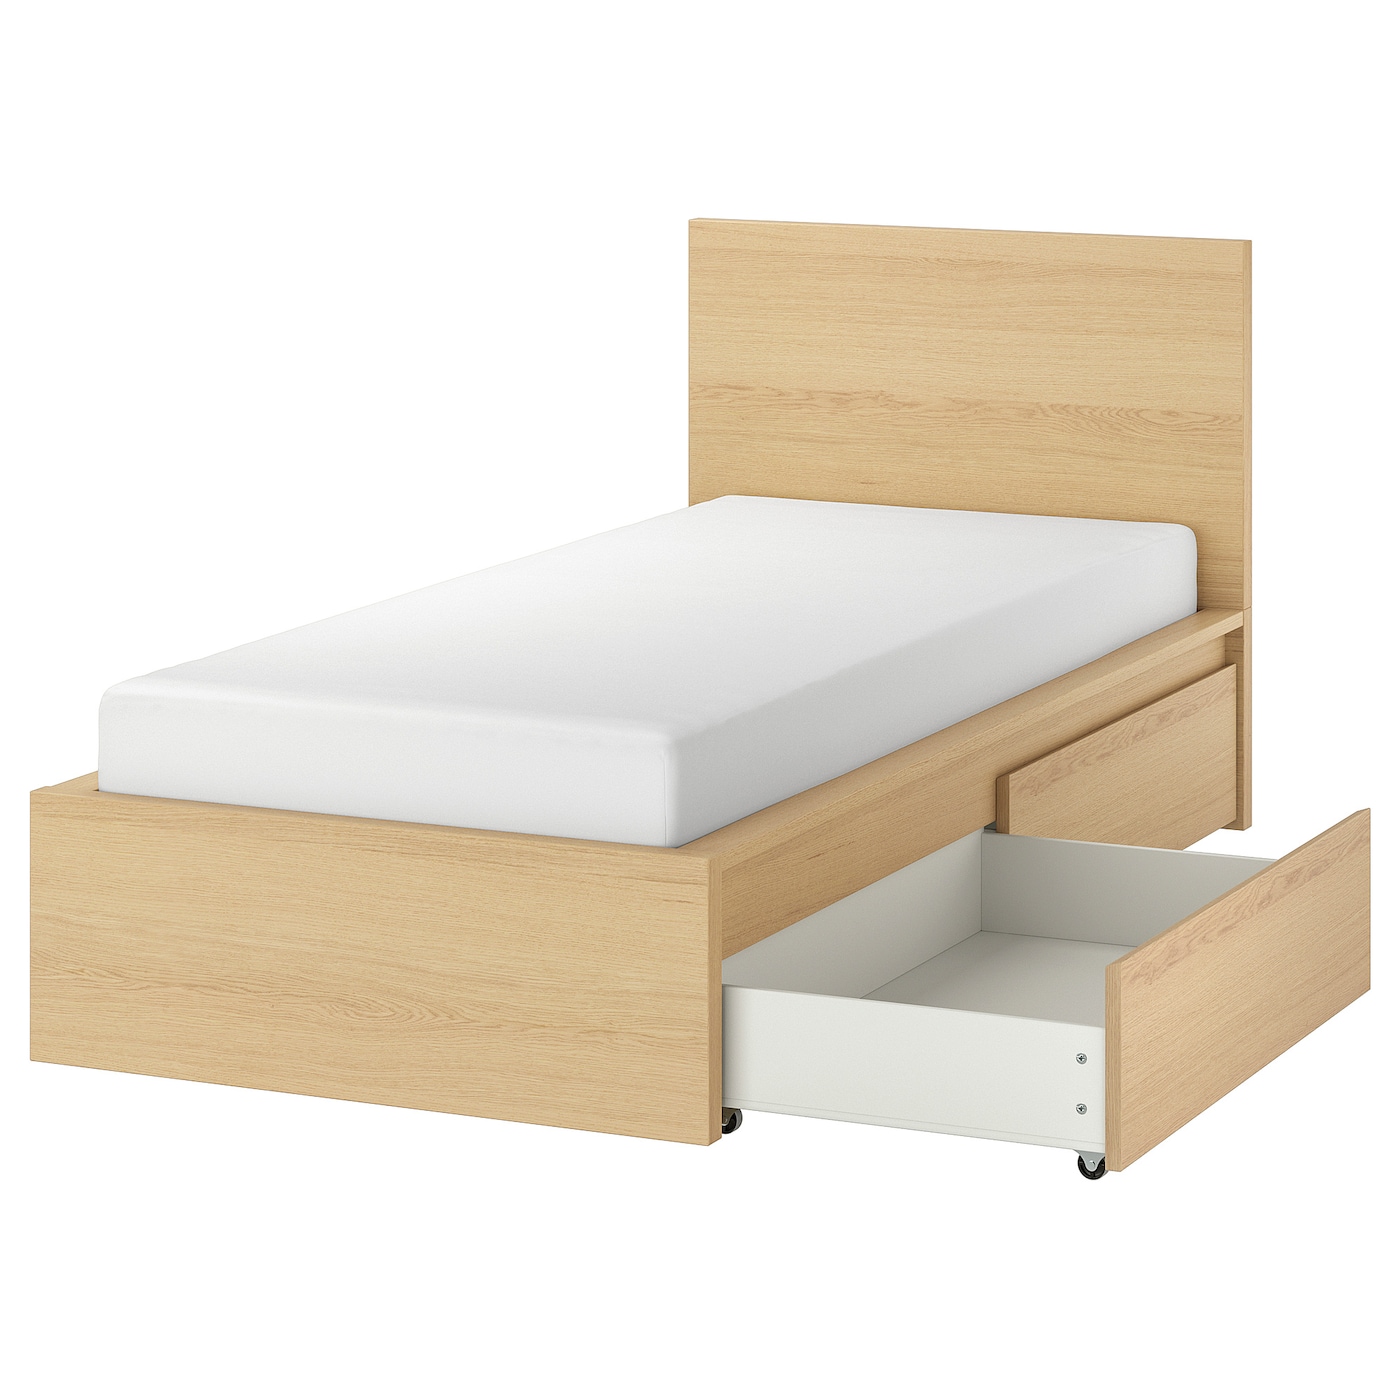 Каркас кровати с 2 ящиками для хранения - IKEA MALM/LINDBАDEN/LINDBÅDEN, 90х200 см, дубовый шпон, беленый МАЛЬМ/ЛИНДБАДЕН ИКЕА